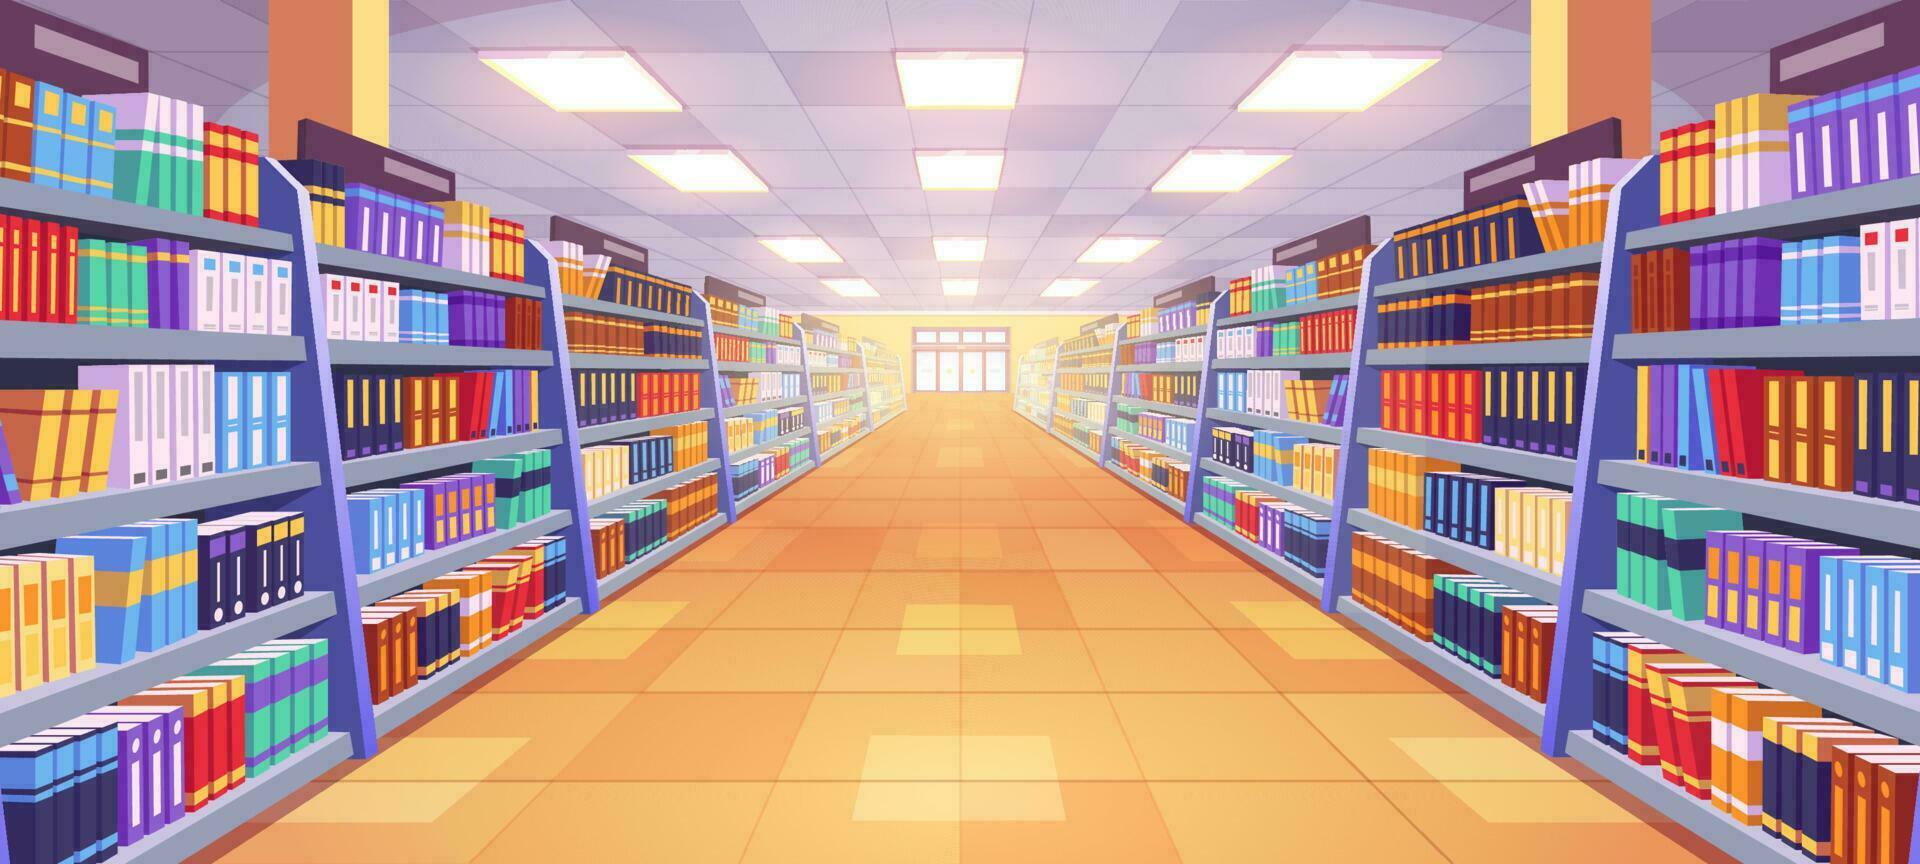 livraria corredor interior com estante ilustração vetor